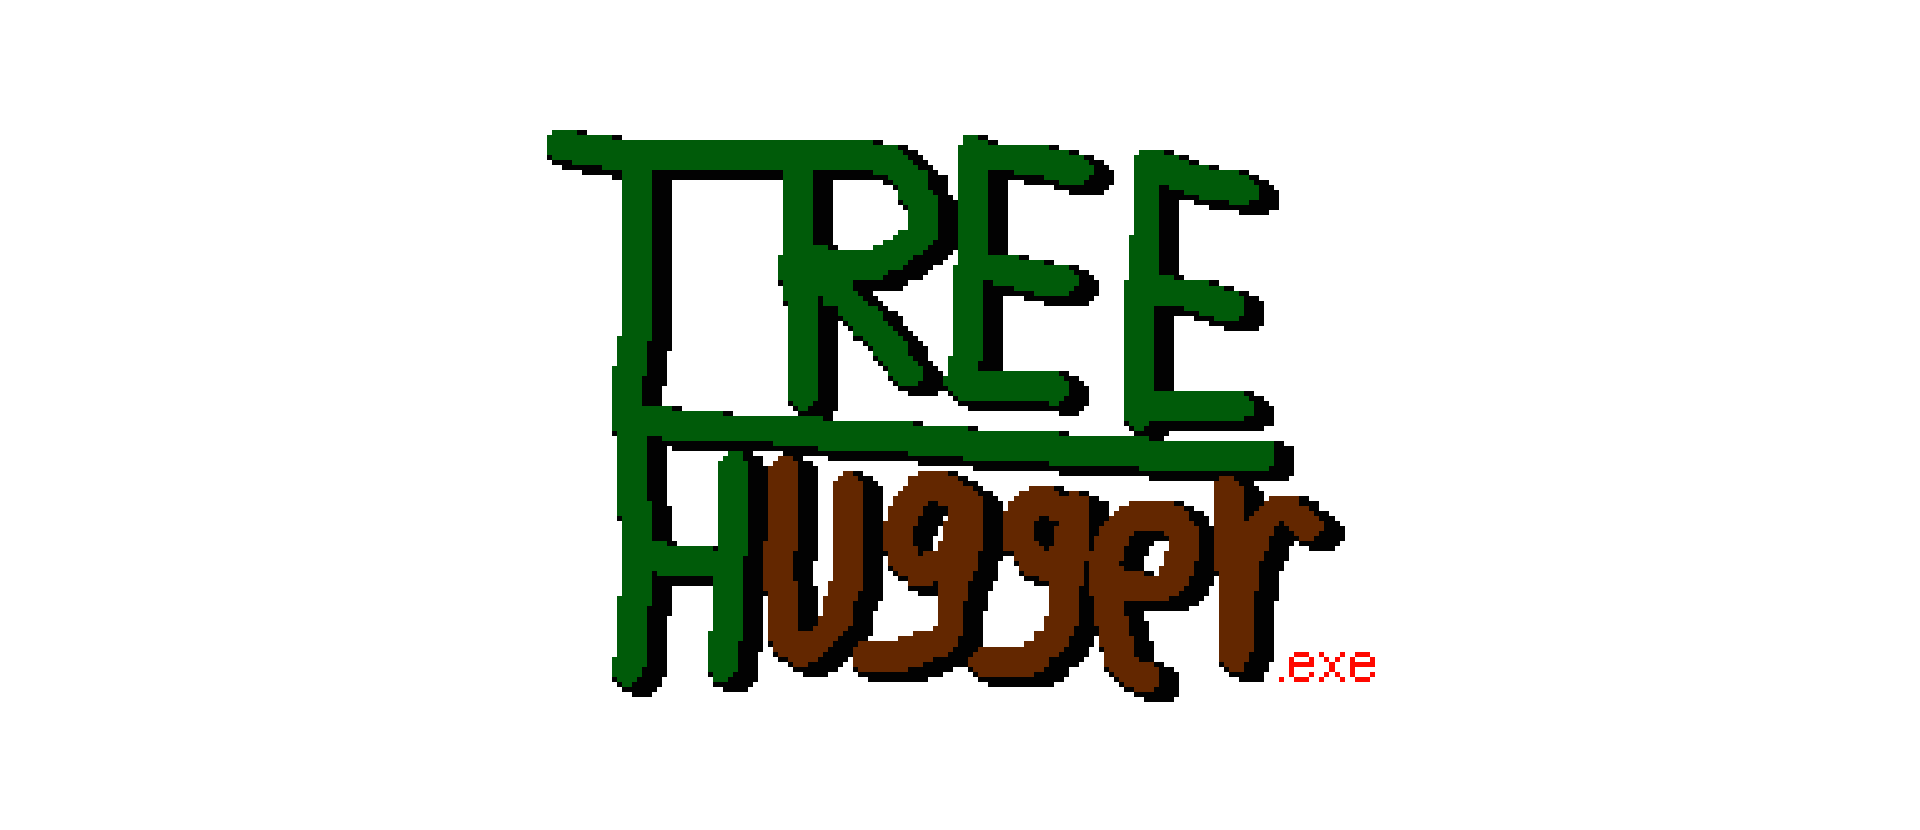 TreeHugger.exe